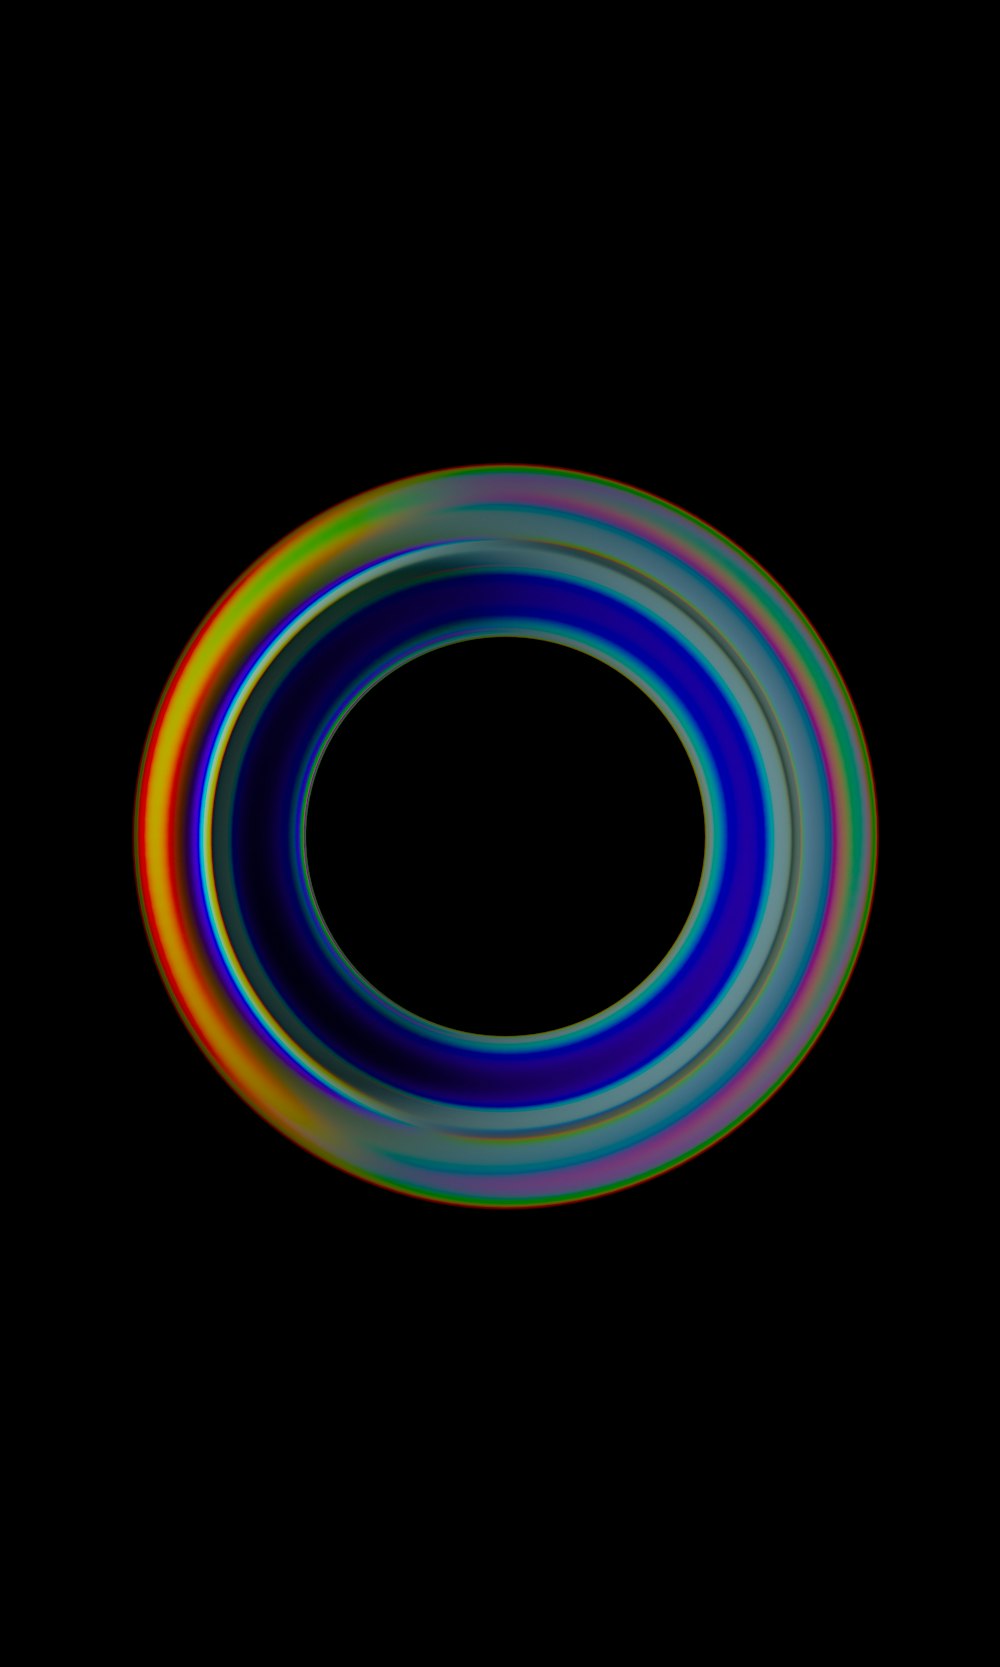 Un círculo colorido con un fondo negro